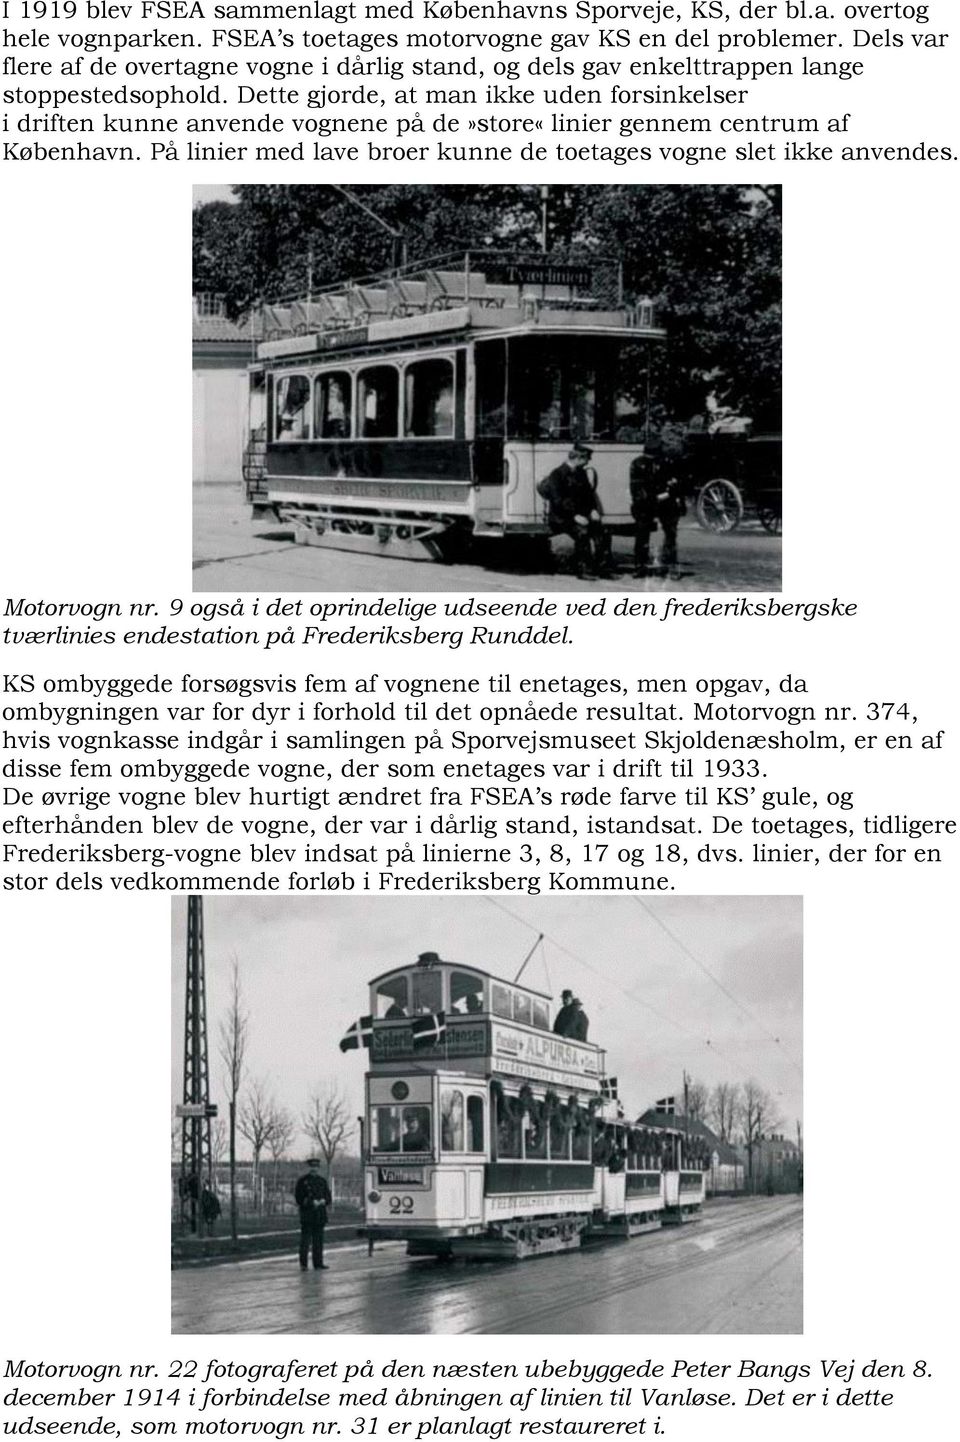 Dette gjorde, at man ikke uden forsinkelser i driften kunne anvende vognene på de»store«linier gennem centrum af København. På linier med lave broer kunne de toetages vogne slet ikke anvendes.